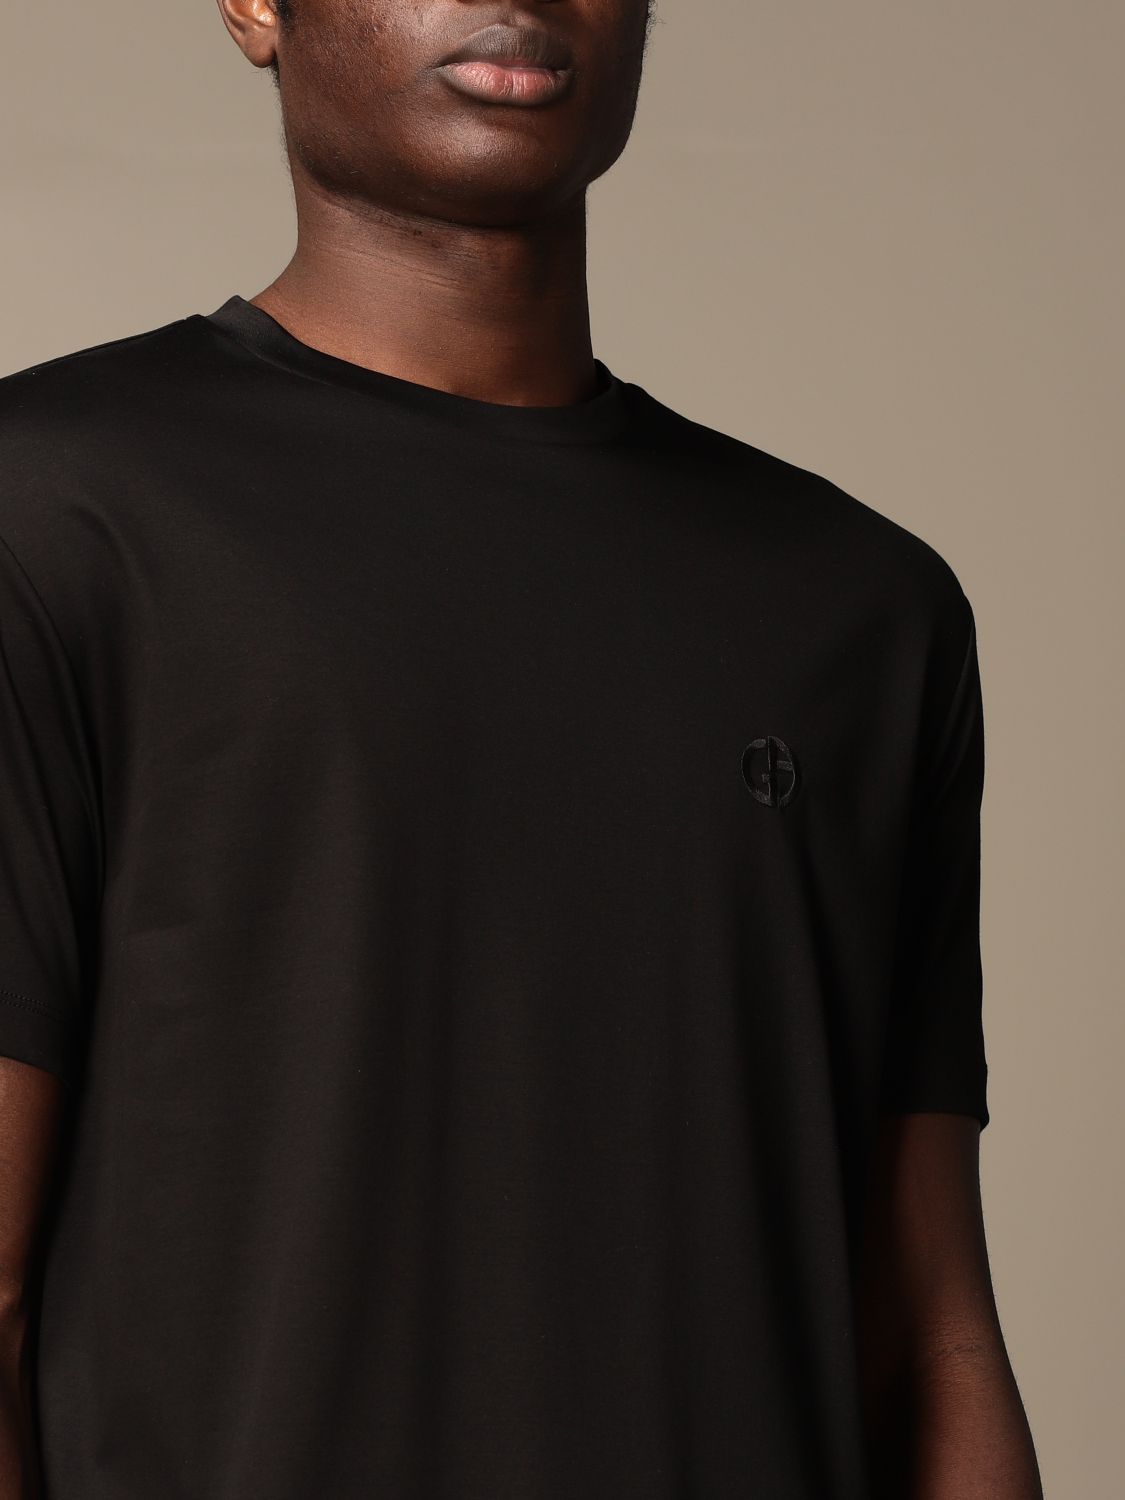 plain black armani t shirt